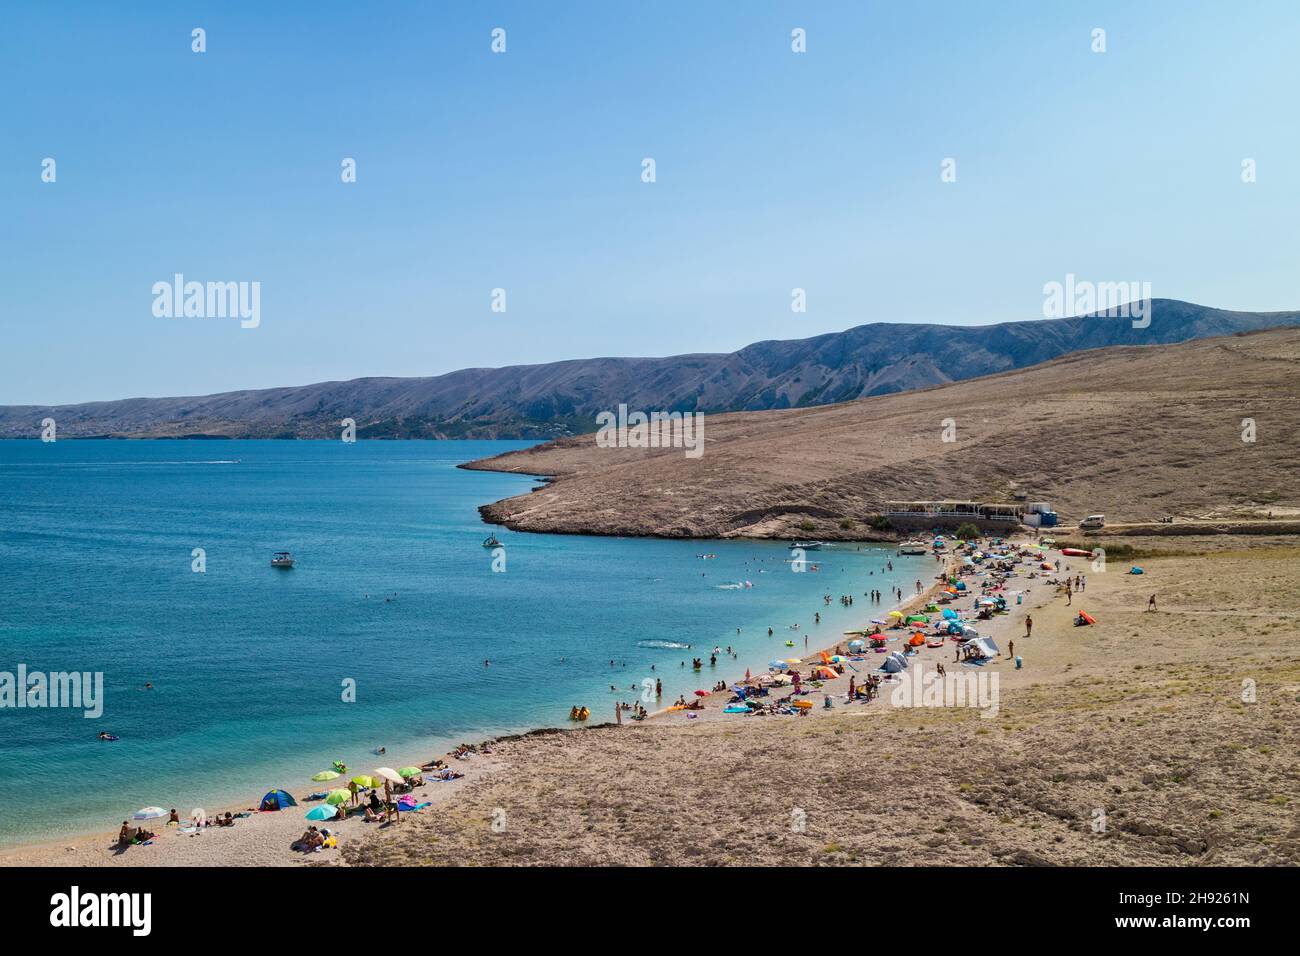 Ručica beach, Pag Island, Dalmatia, Croatia Stock Photo